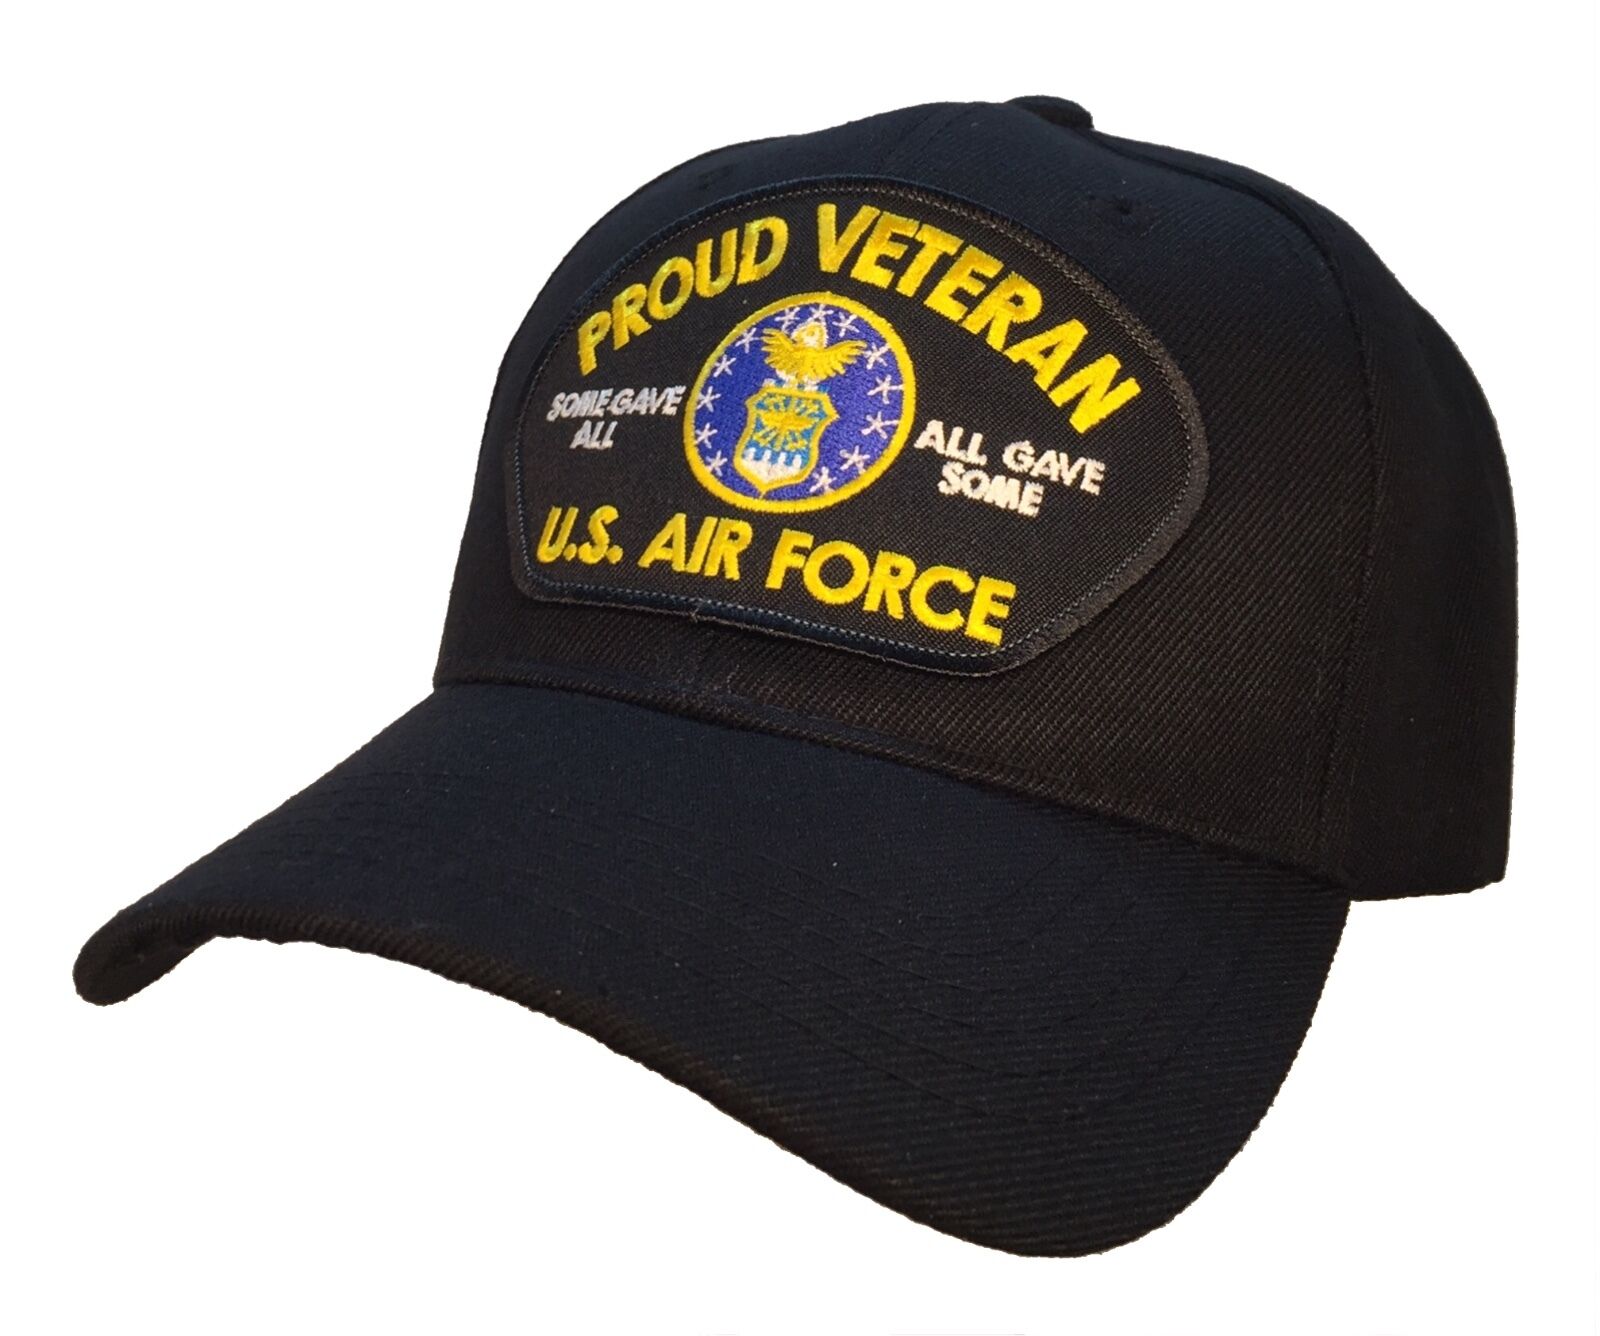 U.S. Air Force Veteran Hat Black Ball Cap PROUD VETERAN SERIES Some Gave All...